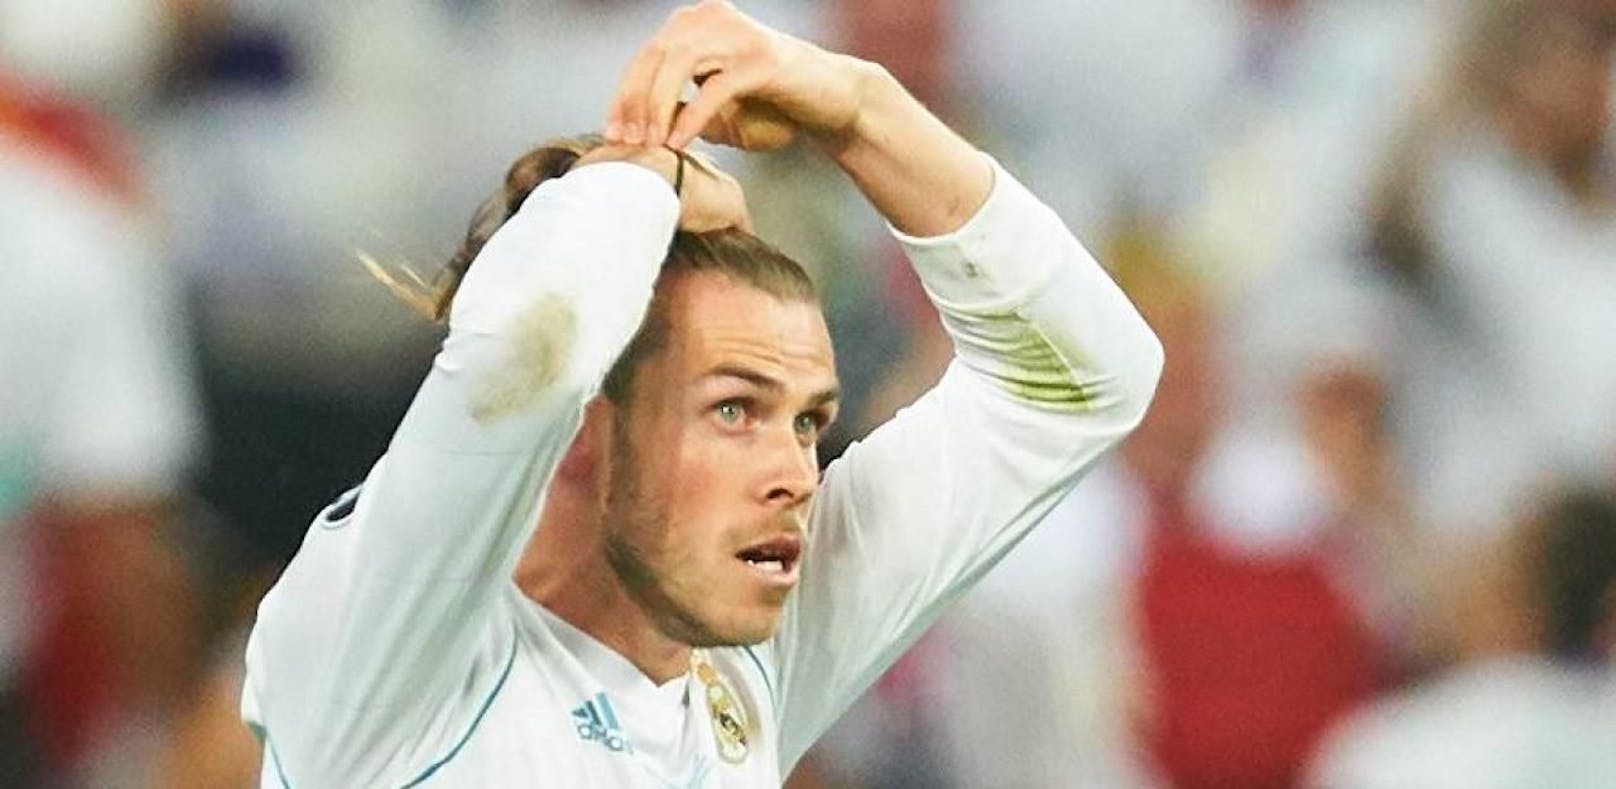 384 Millionen Euro! Diese Summe will Real für Bale